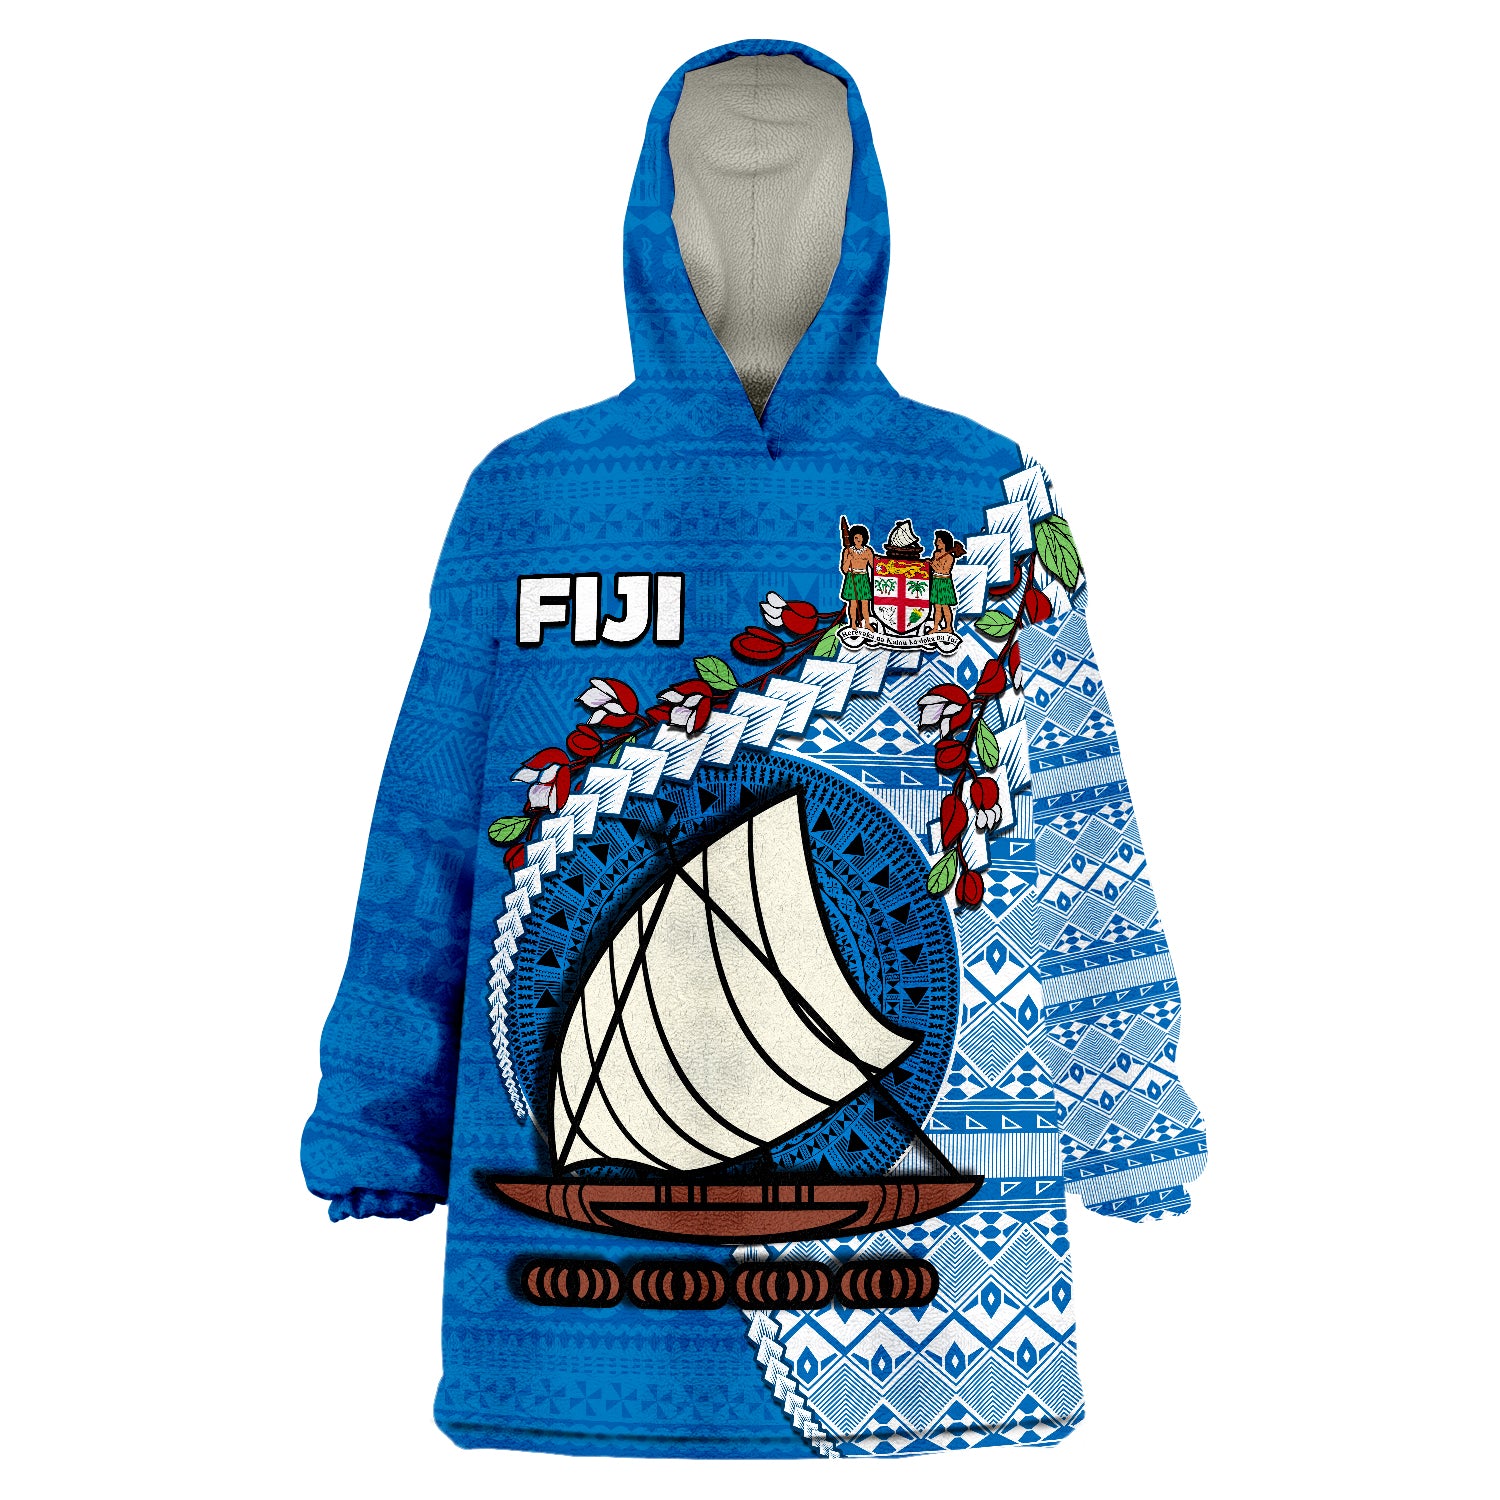 fiji-fijian-drua-mix-tagimaucia-flower-blue-style-wearable-blanket-hoodie